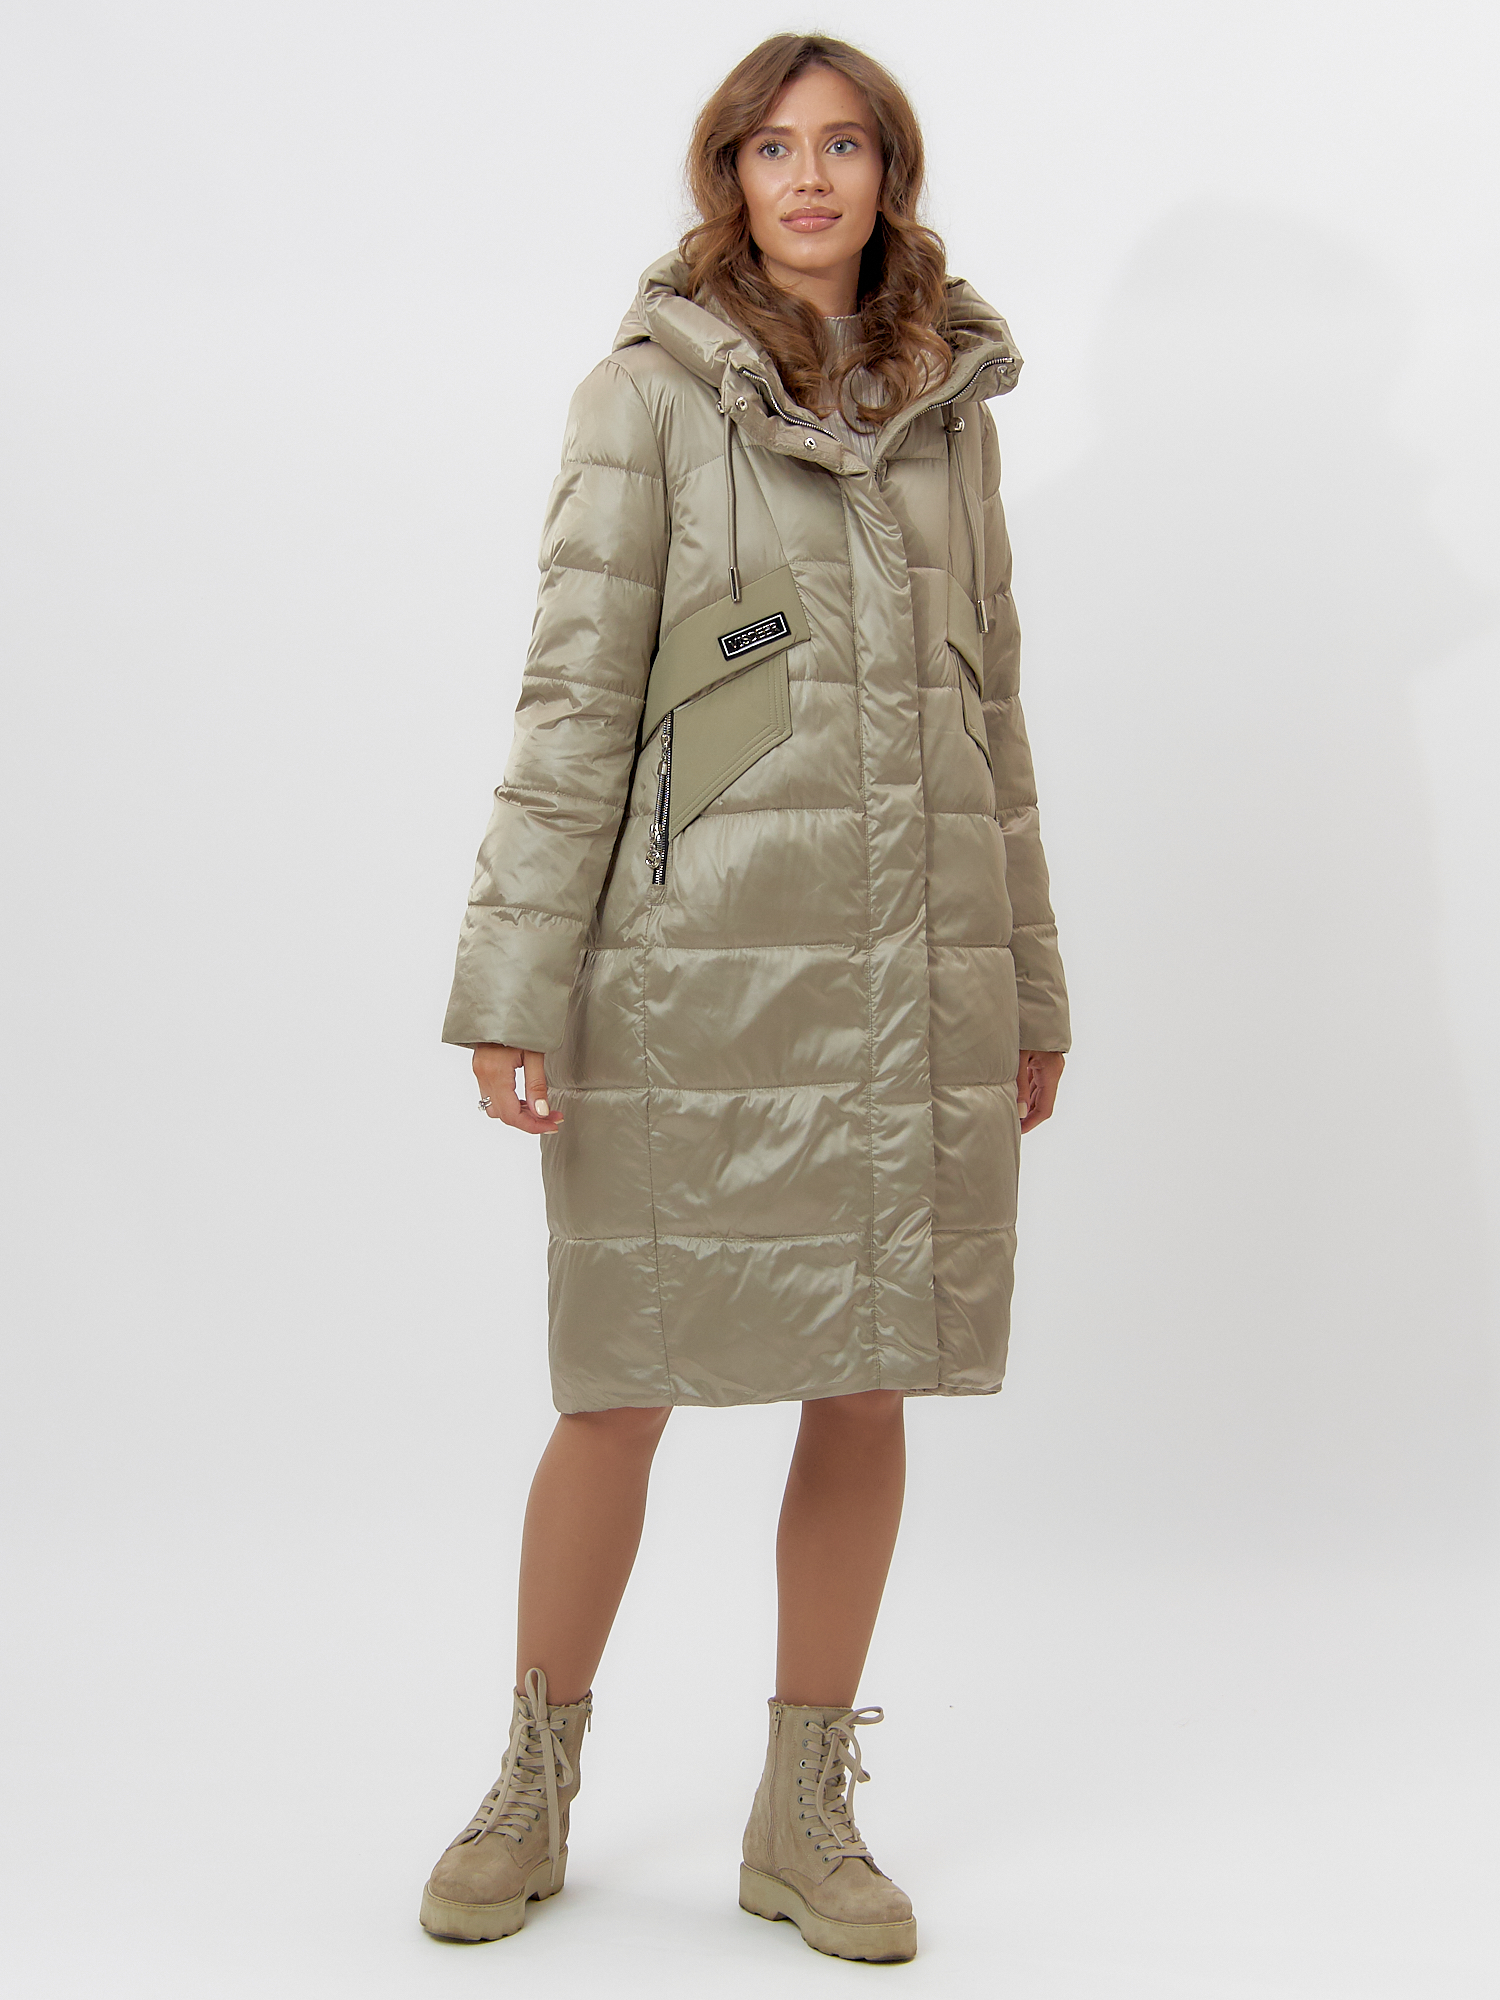 Купить Пальто утепленное женское зимние бежевого цвета 11201B